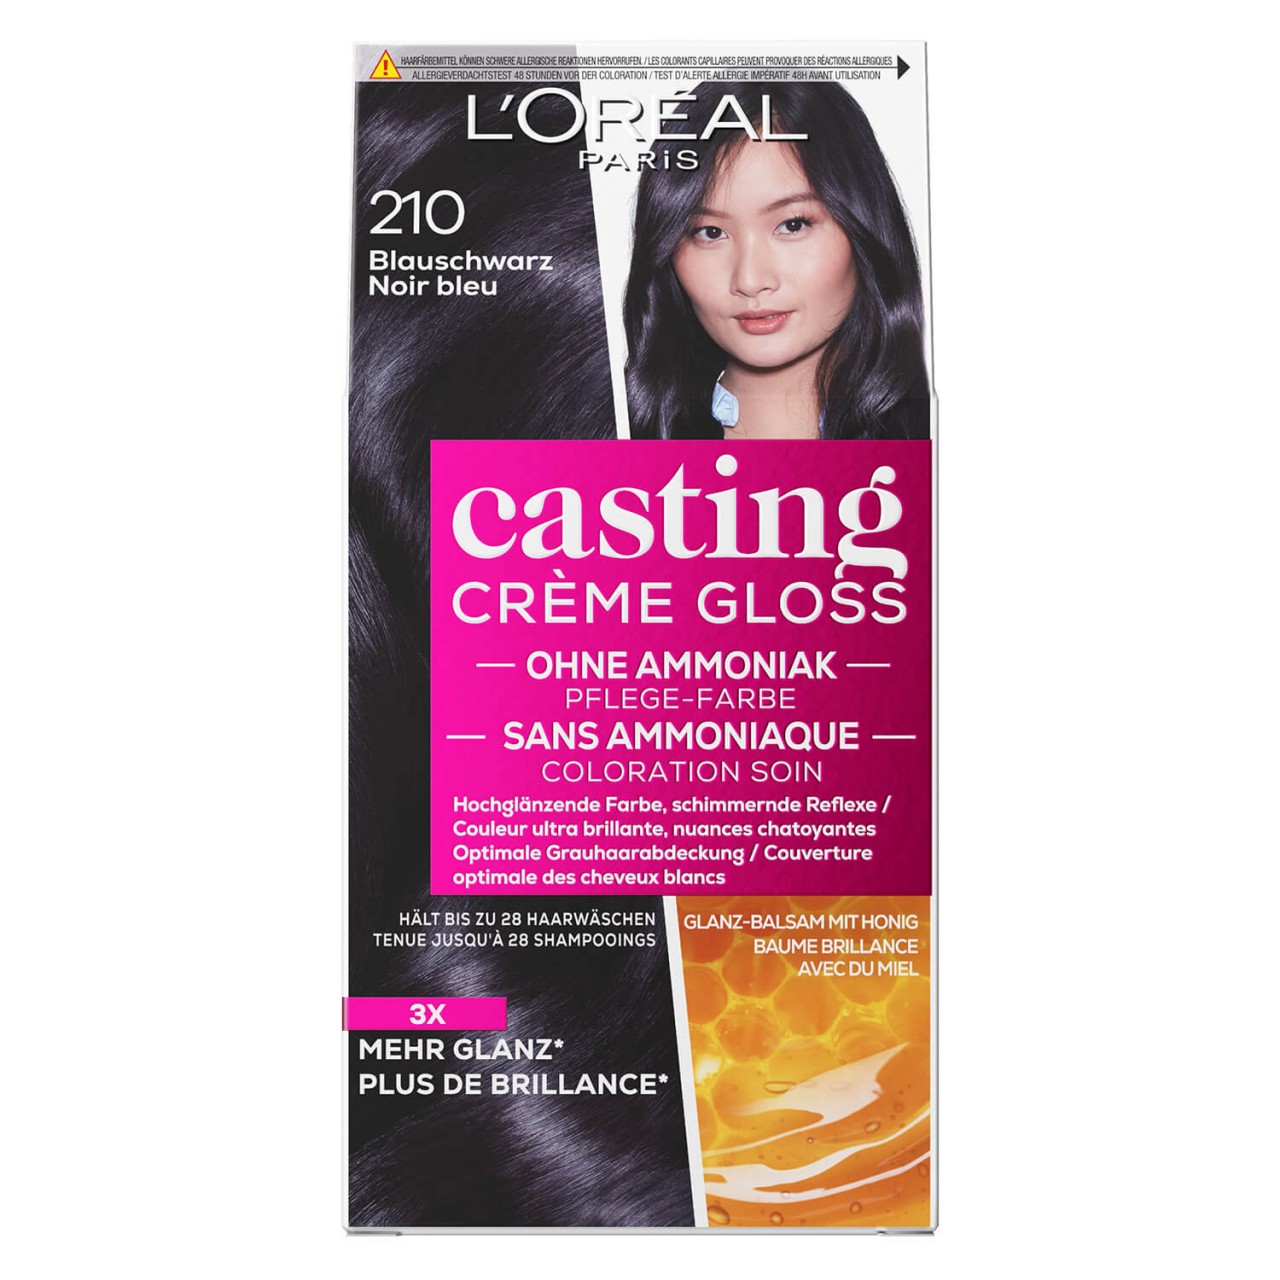 LOréal Casting - Crème Gloss 210 Blauschwarz von L'Oréal Paris